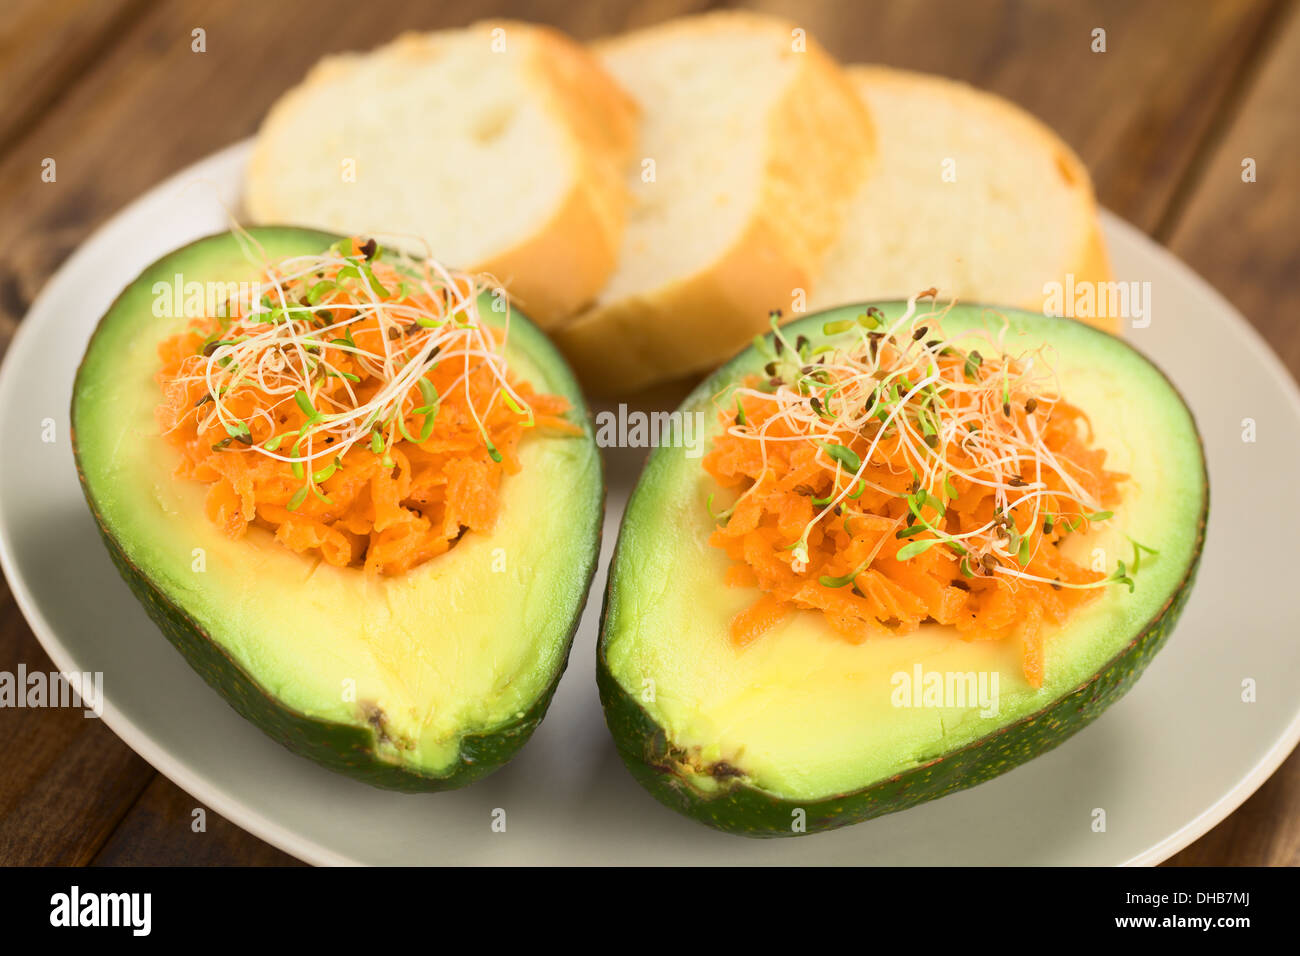 Metà di Avocado riempito con carote grattugiate e cosparso di germogli alfalfa servito sulla piastra con baguette fette Foto Stock